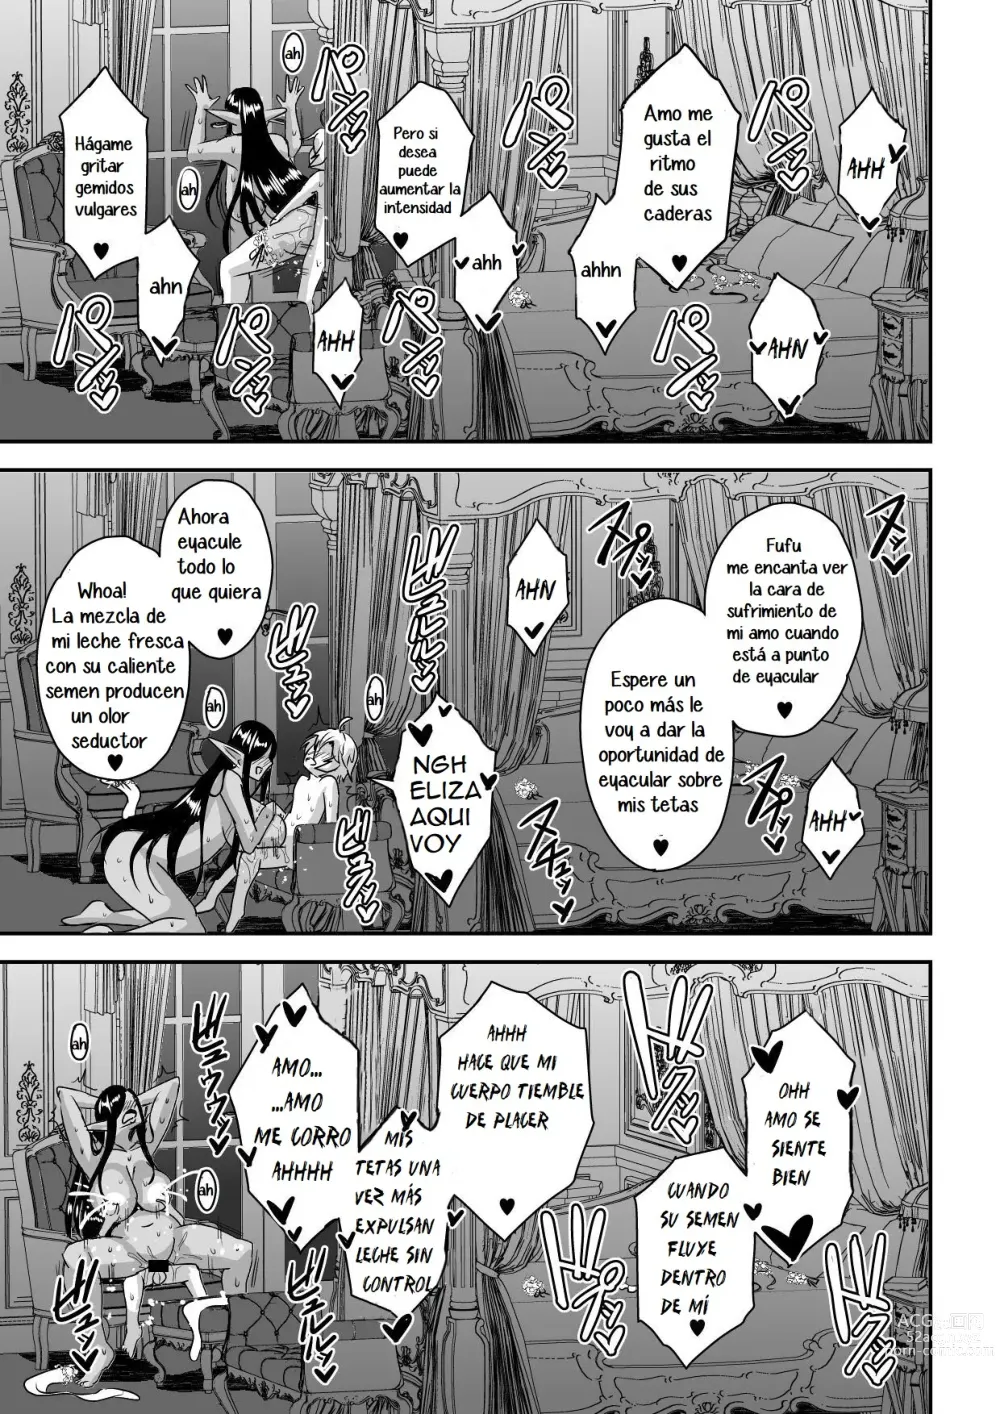 Page 42 of doujinshi Destruire mil mundos con tal de ir a la cama con mi señor una vez mas